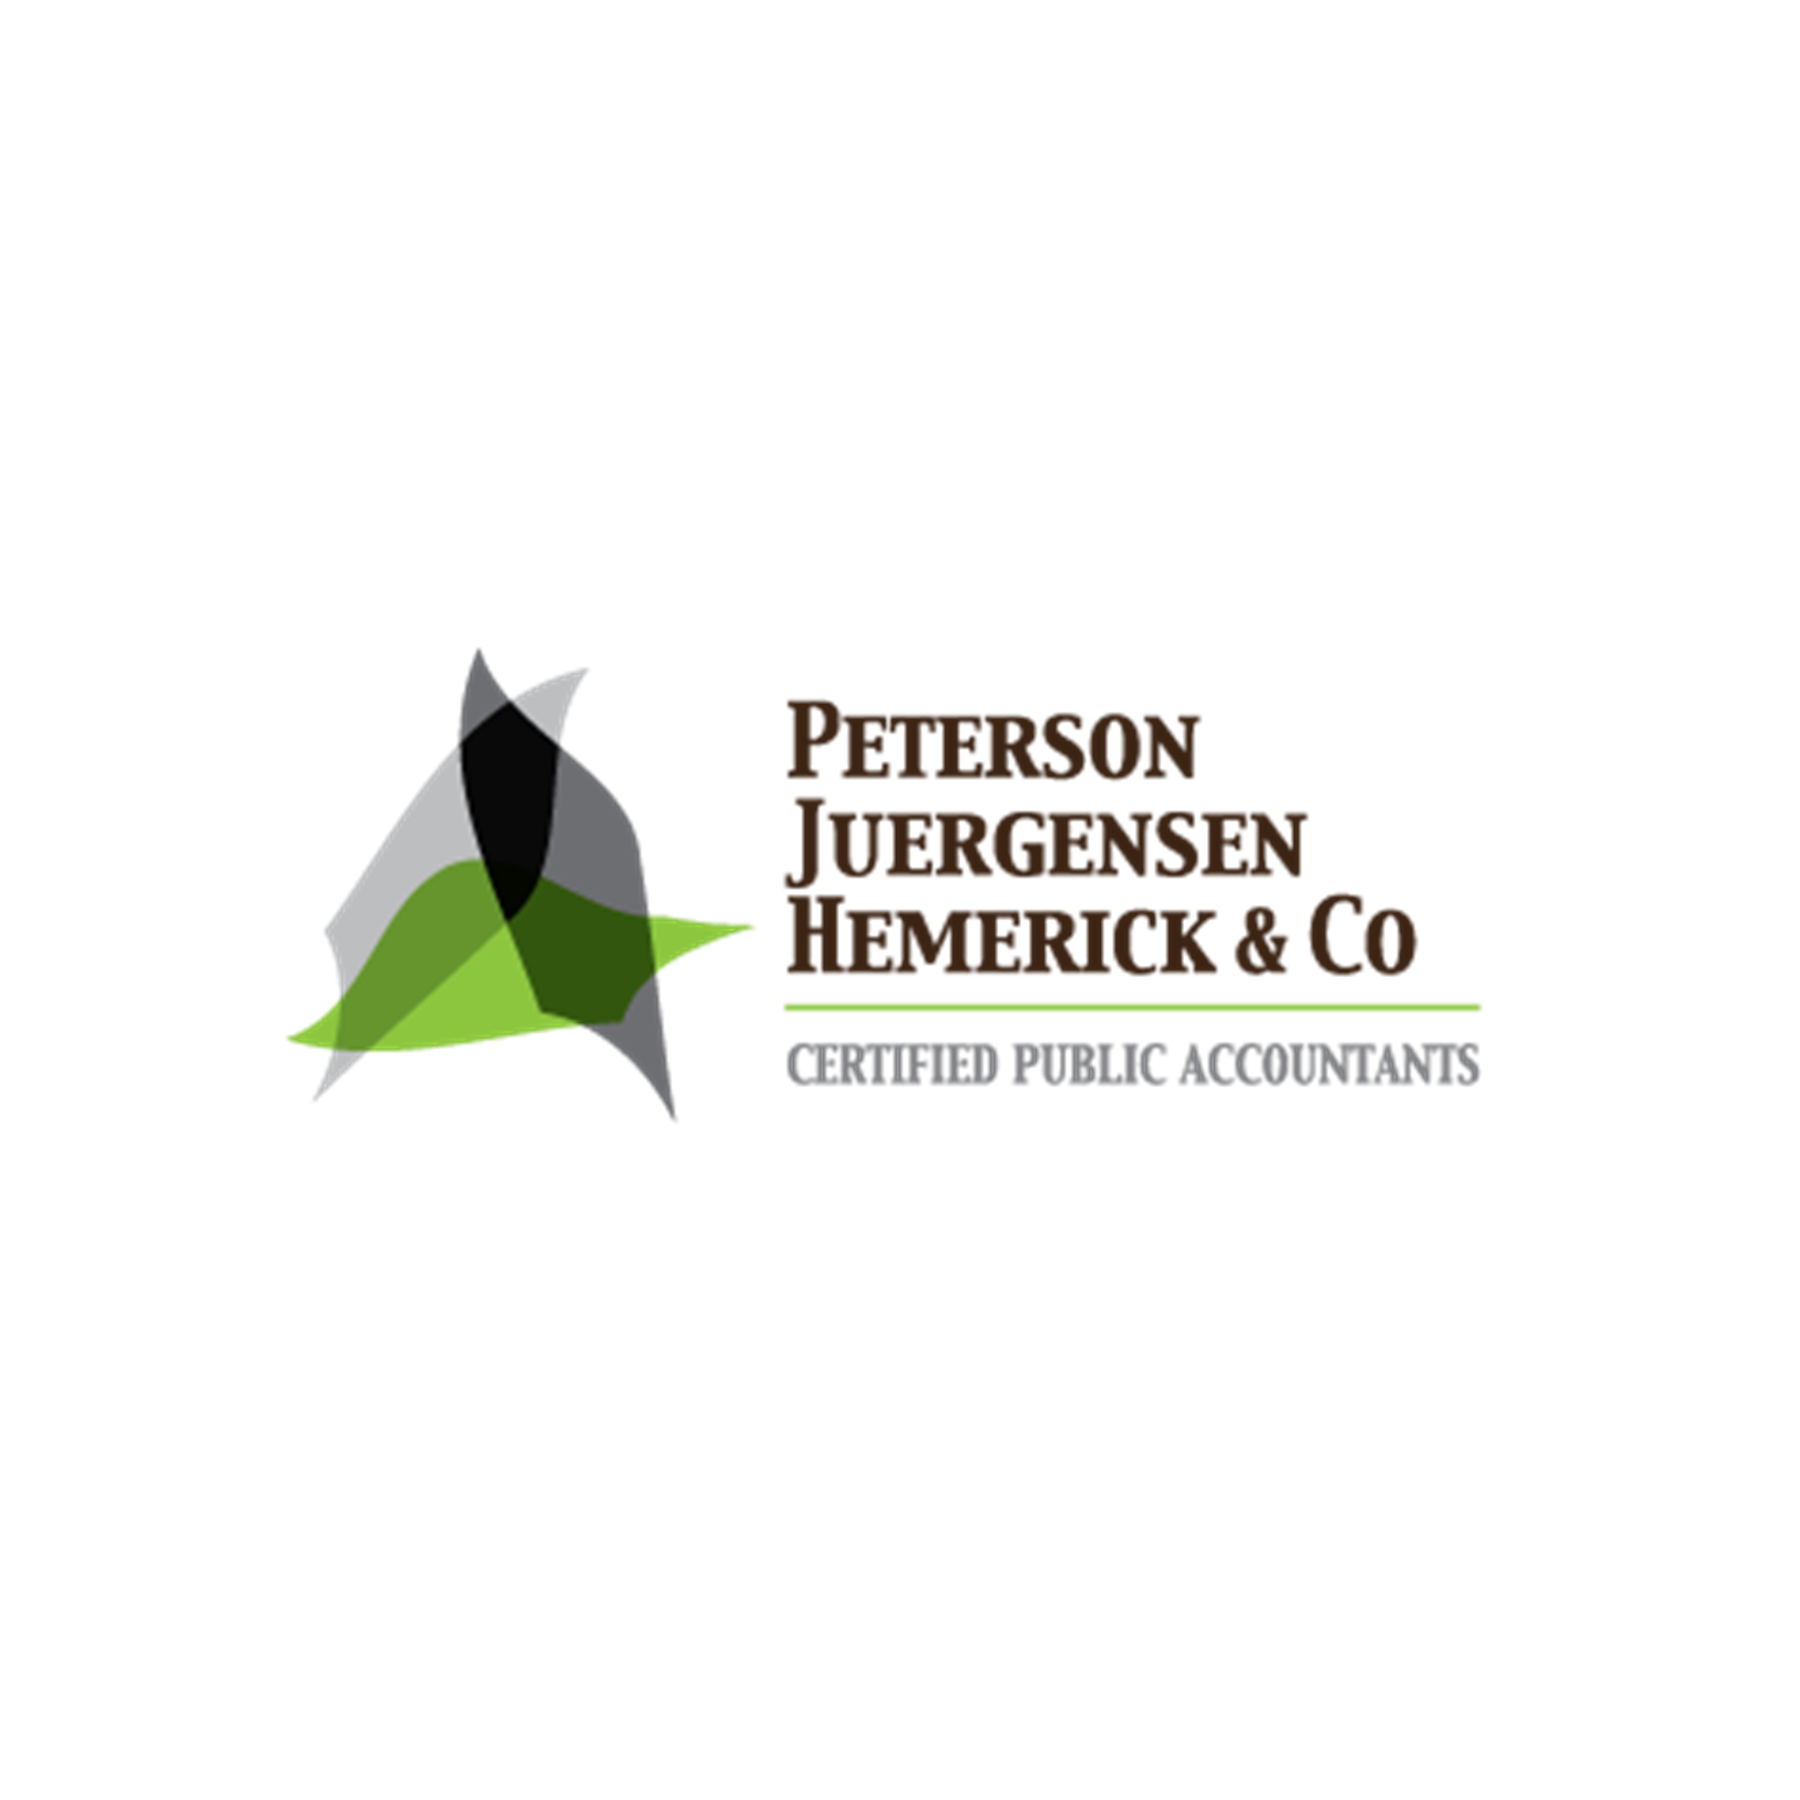 Peterson Juergensen Hemerick & Co